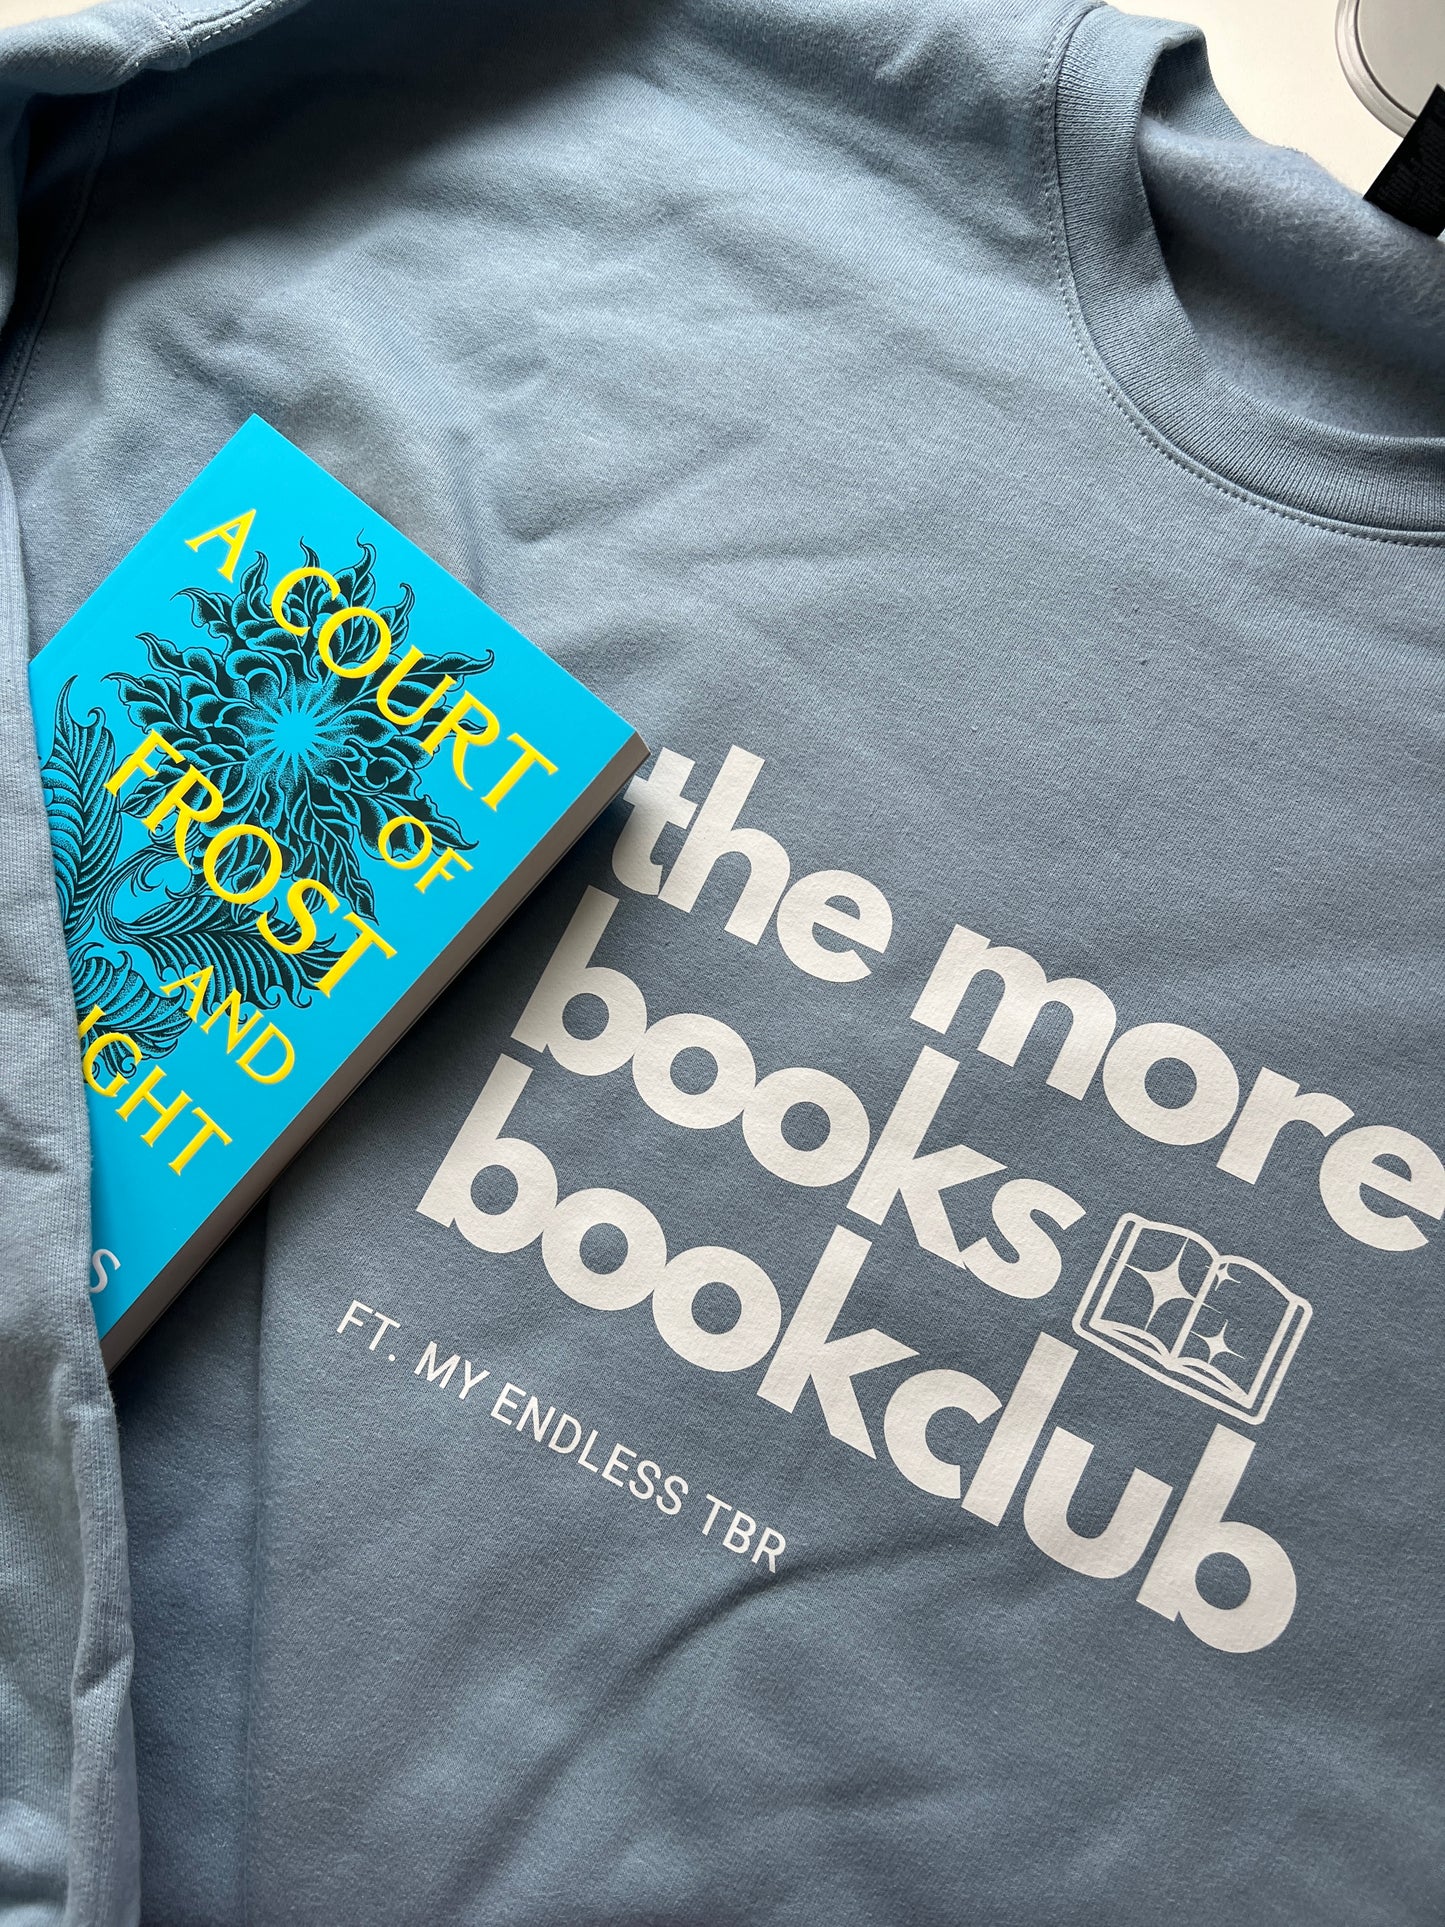 The More Books Book Club